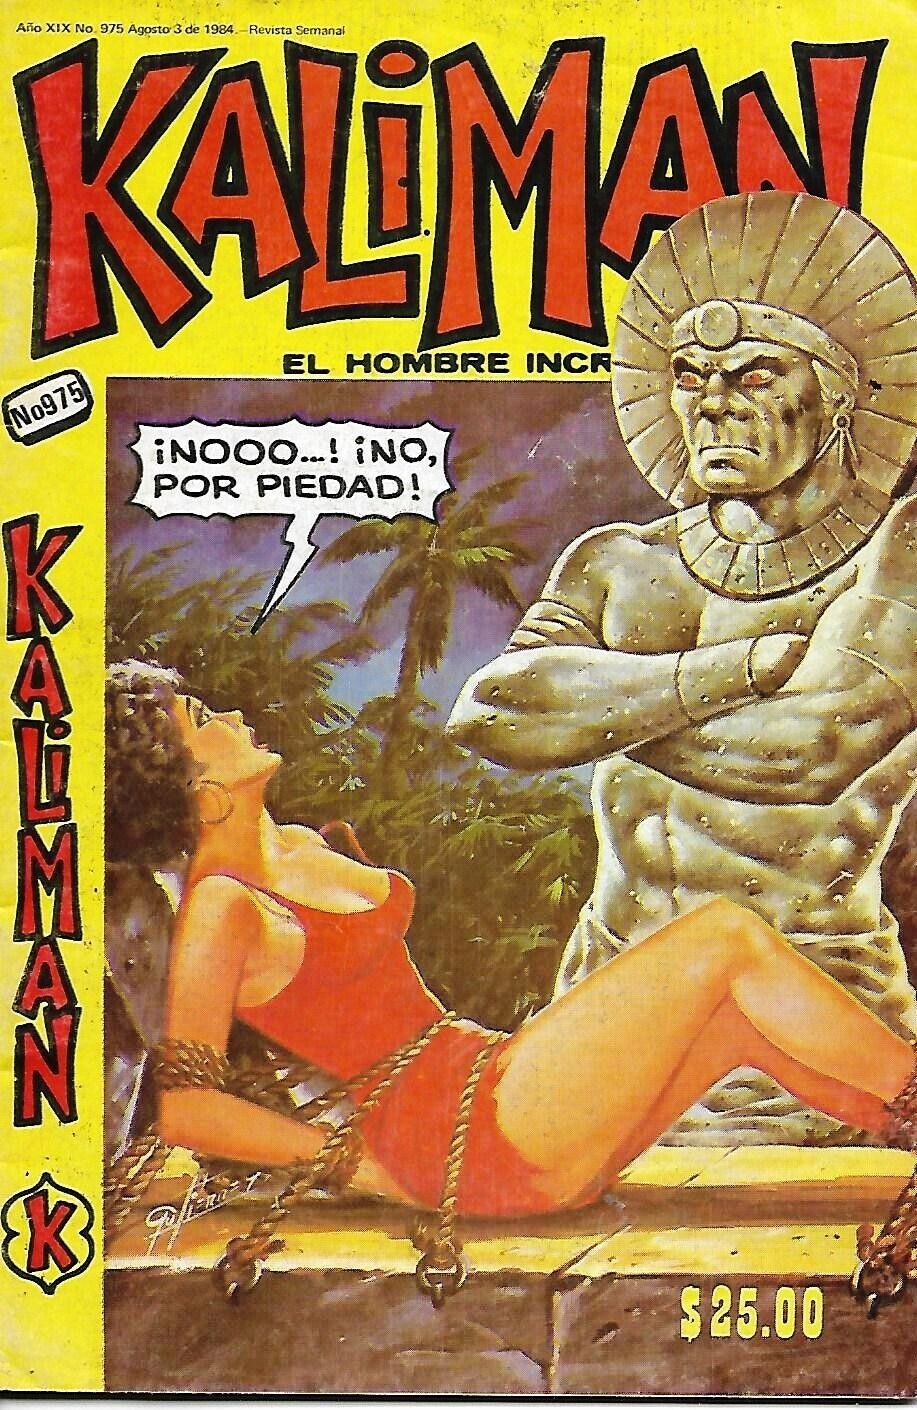 Kaliman El Hombre Increible #975 - Agosto 3, 1984 - Mexico